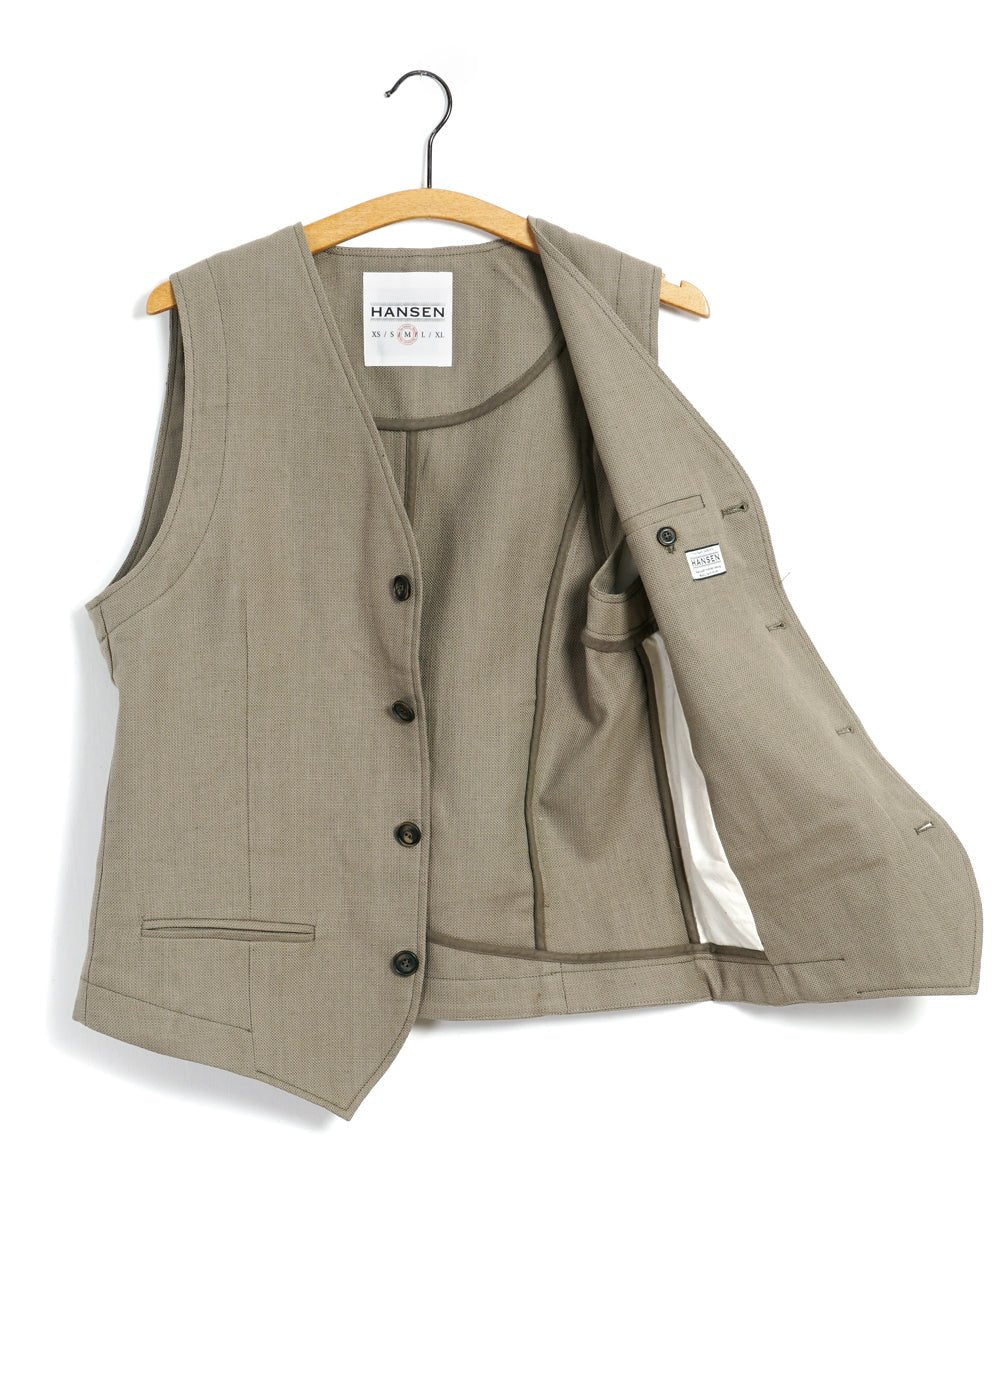 HANSEN GARMENTS - DANIEL | Classic Waistcoat | Bay Leaf - HANSEN Garments